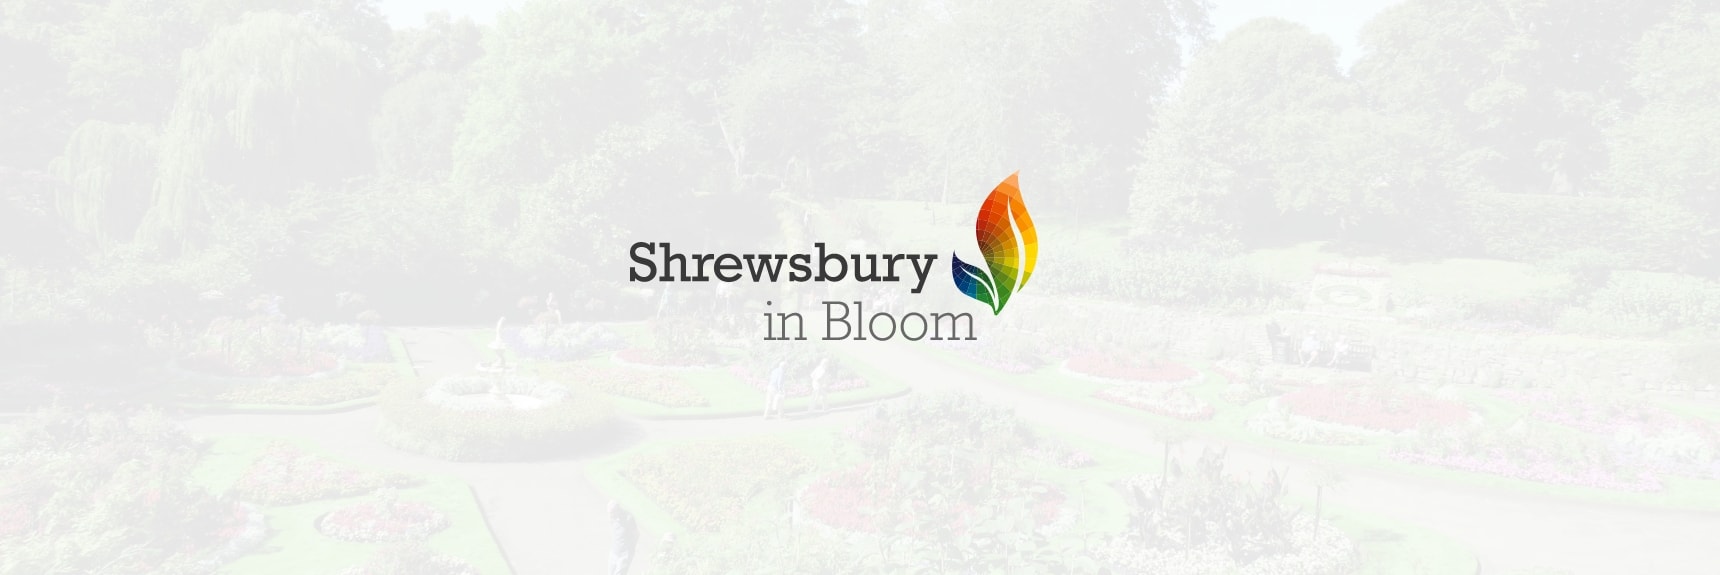 Shrewsbury in Bloom